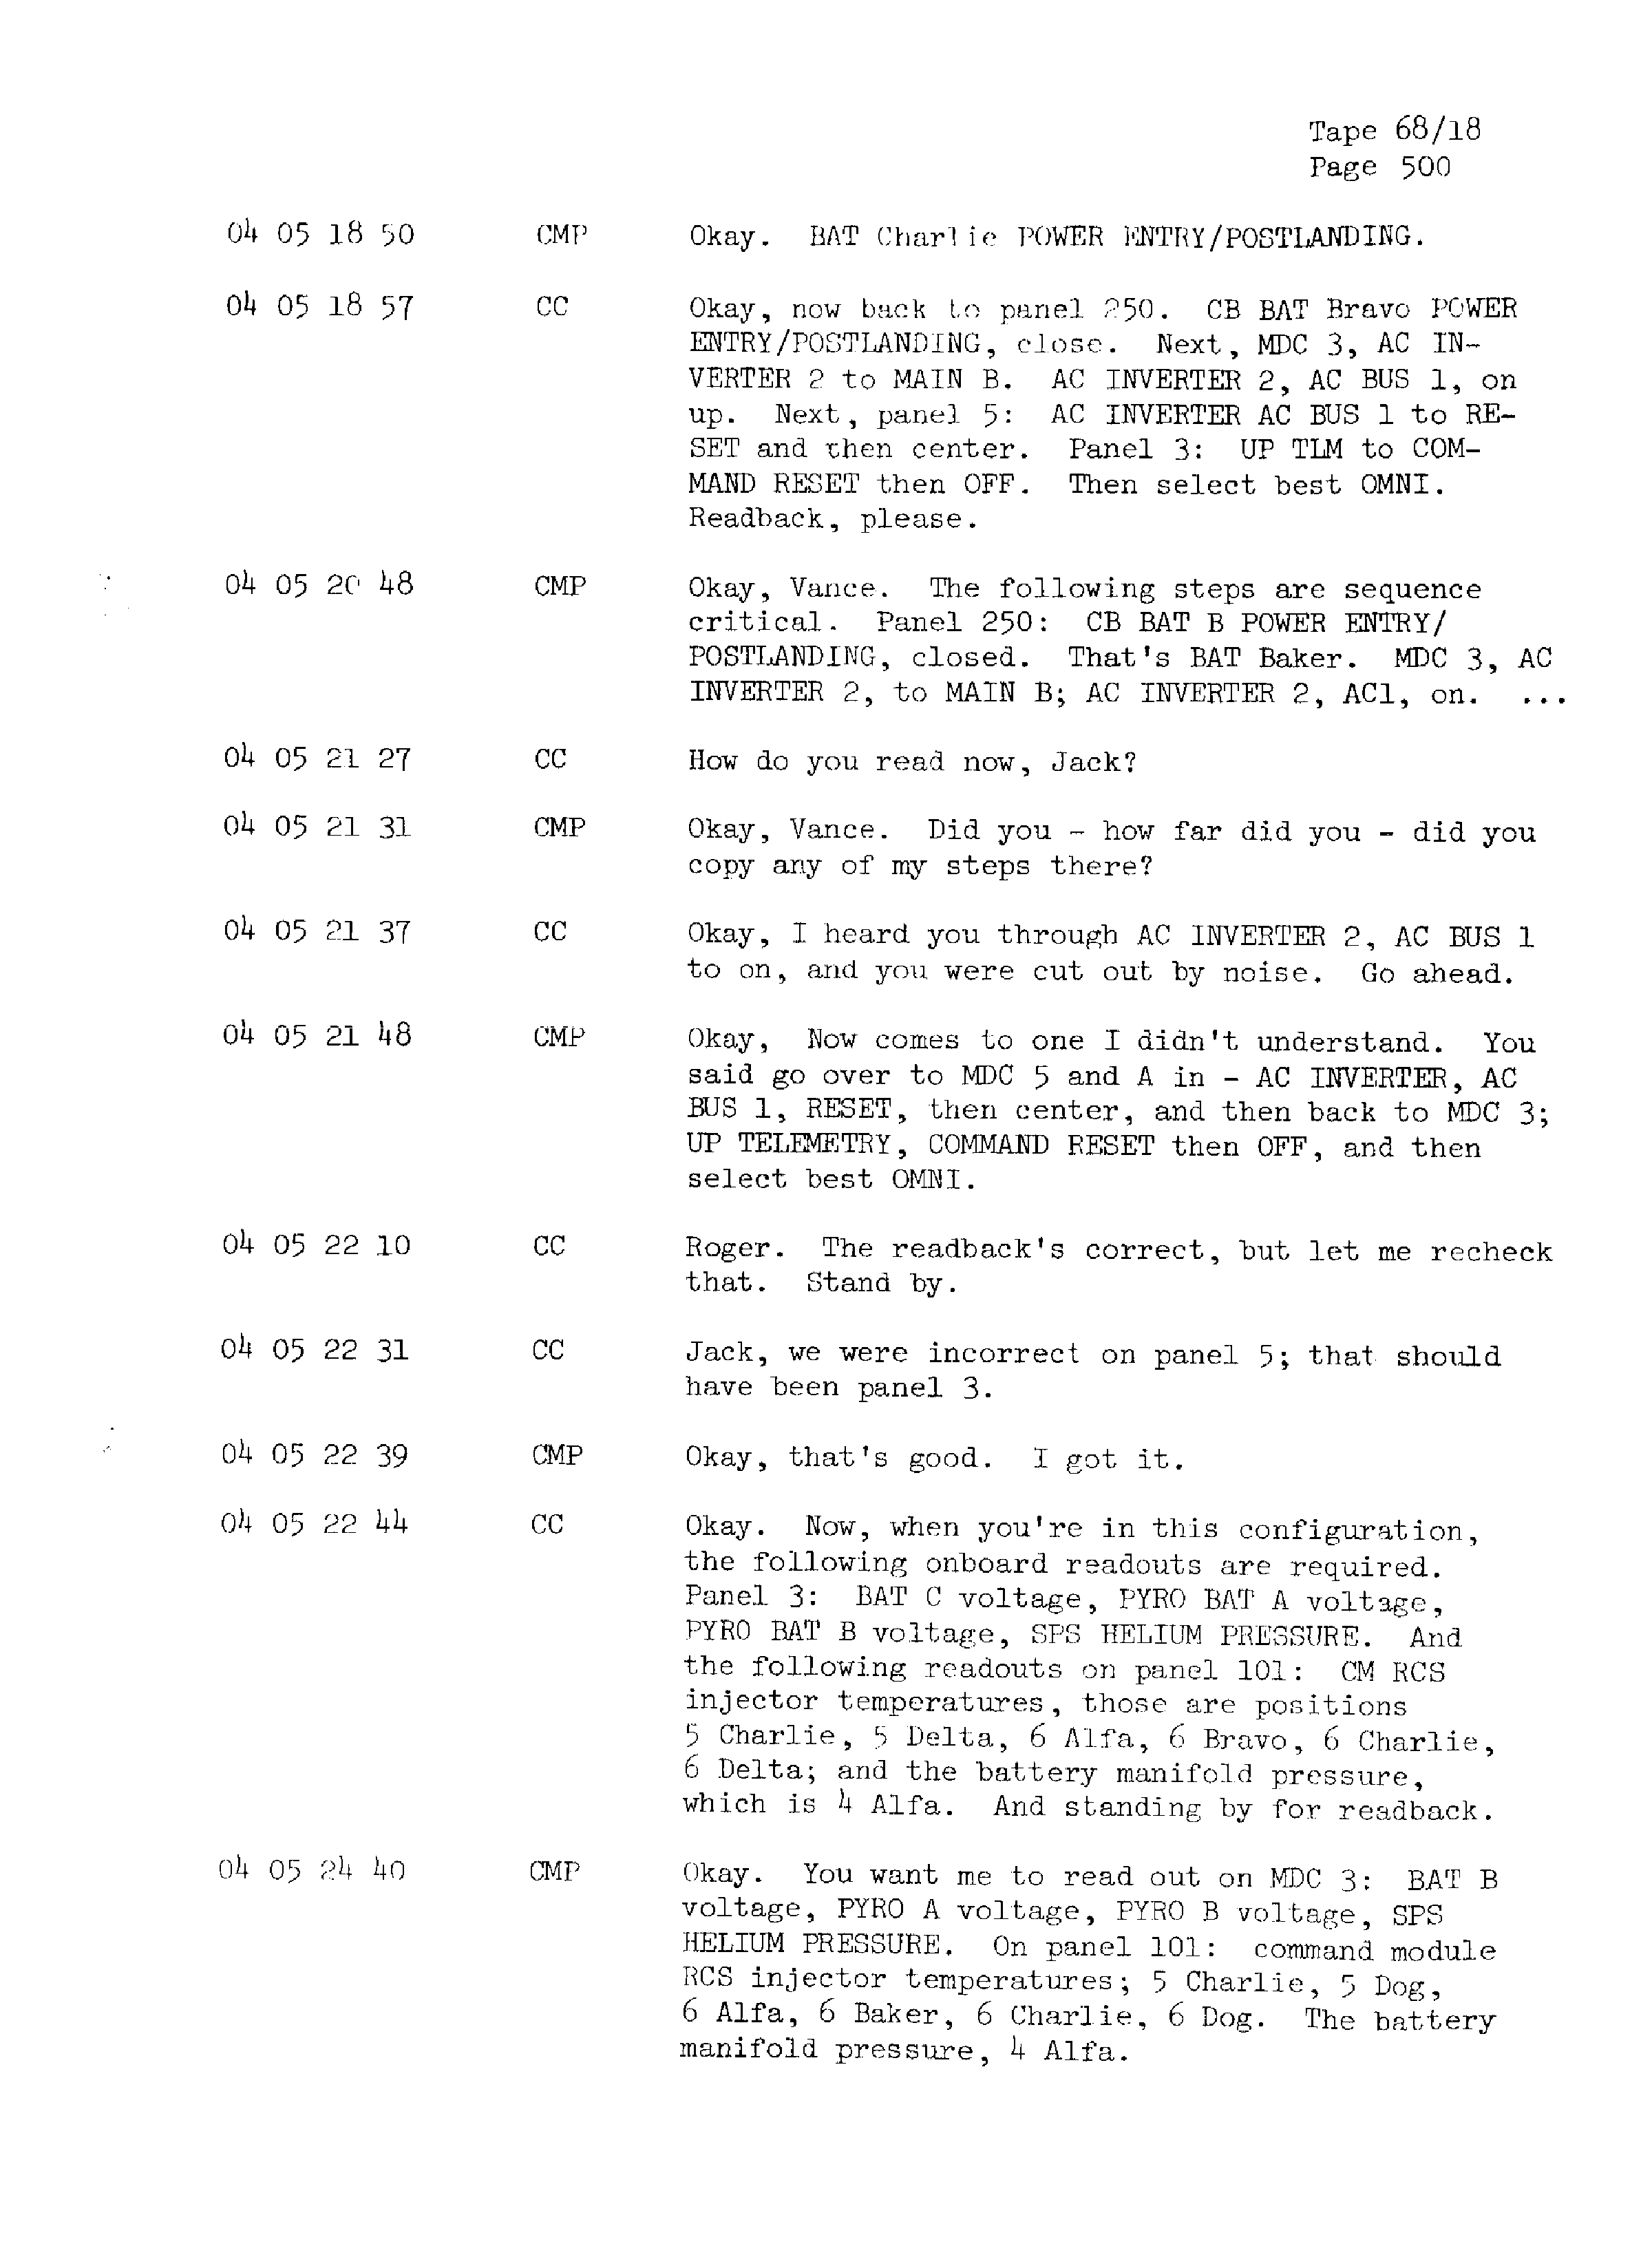 Page 507 of Apollo 13’s original transcript